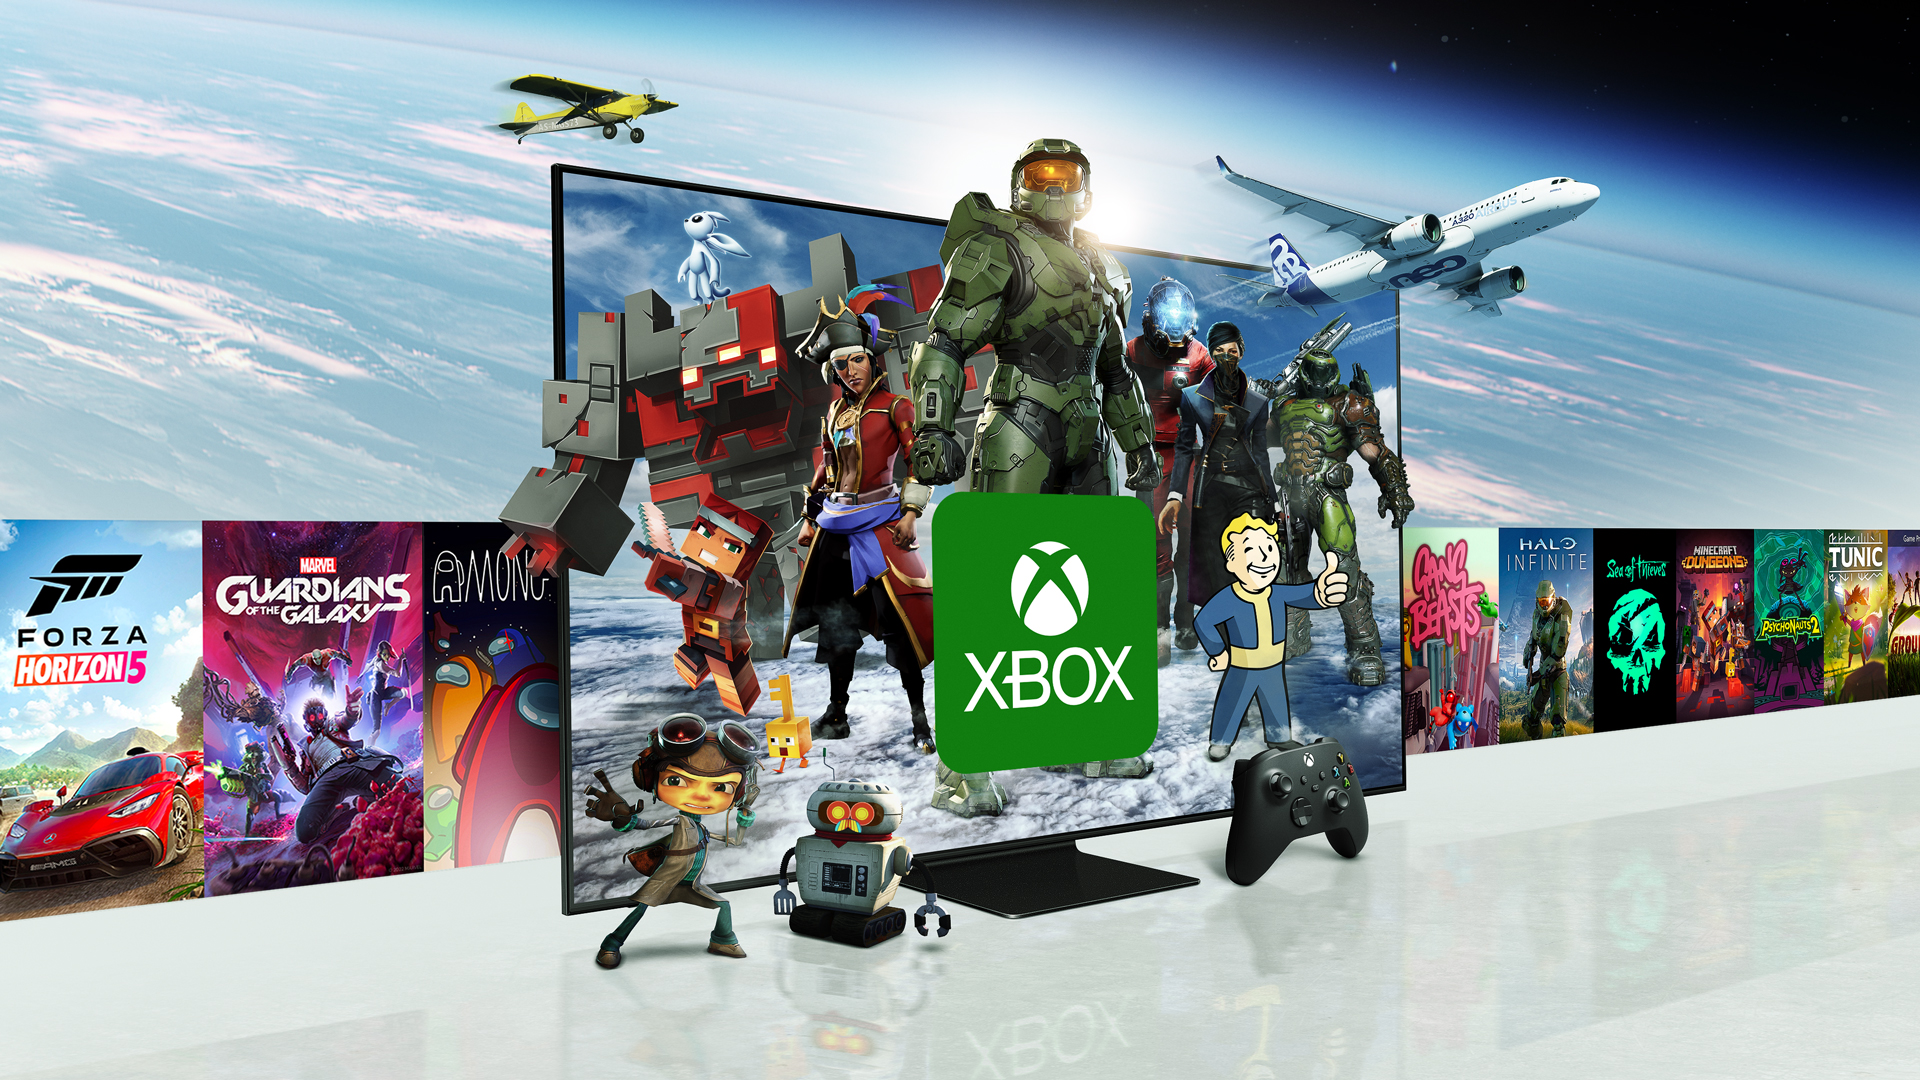 Jogo Minecraft Xbox One Microsoft em Promoção é no Buscapé